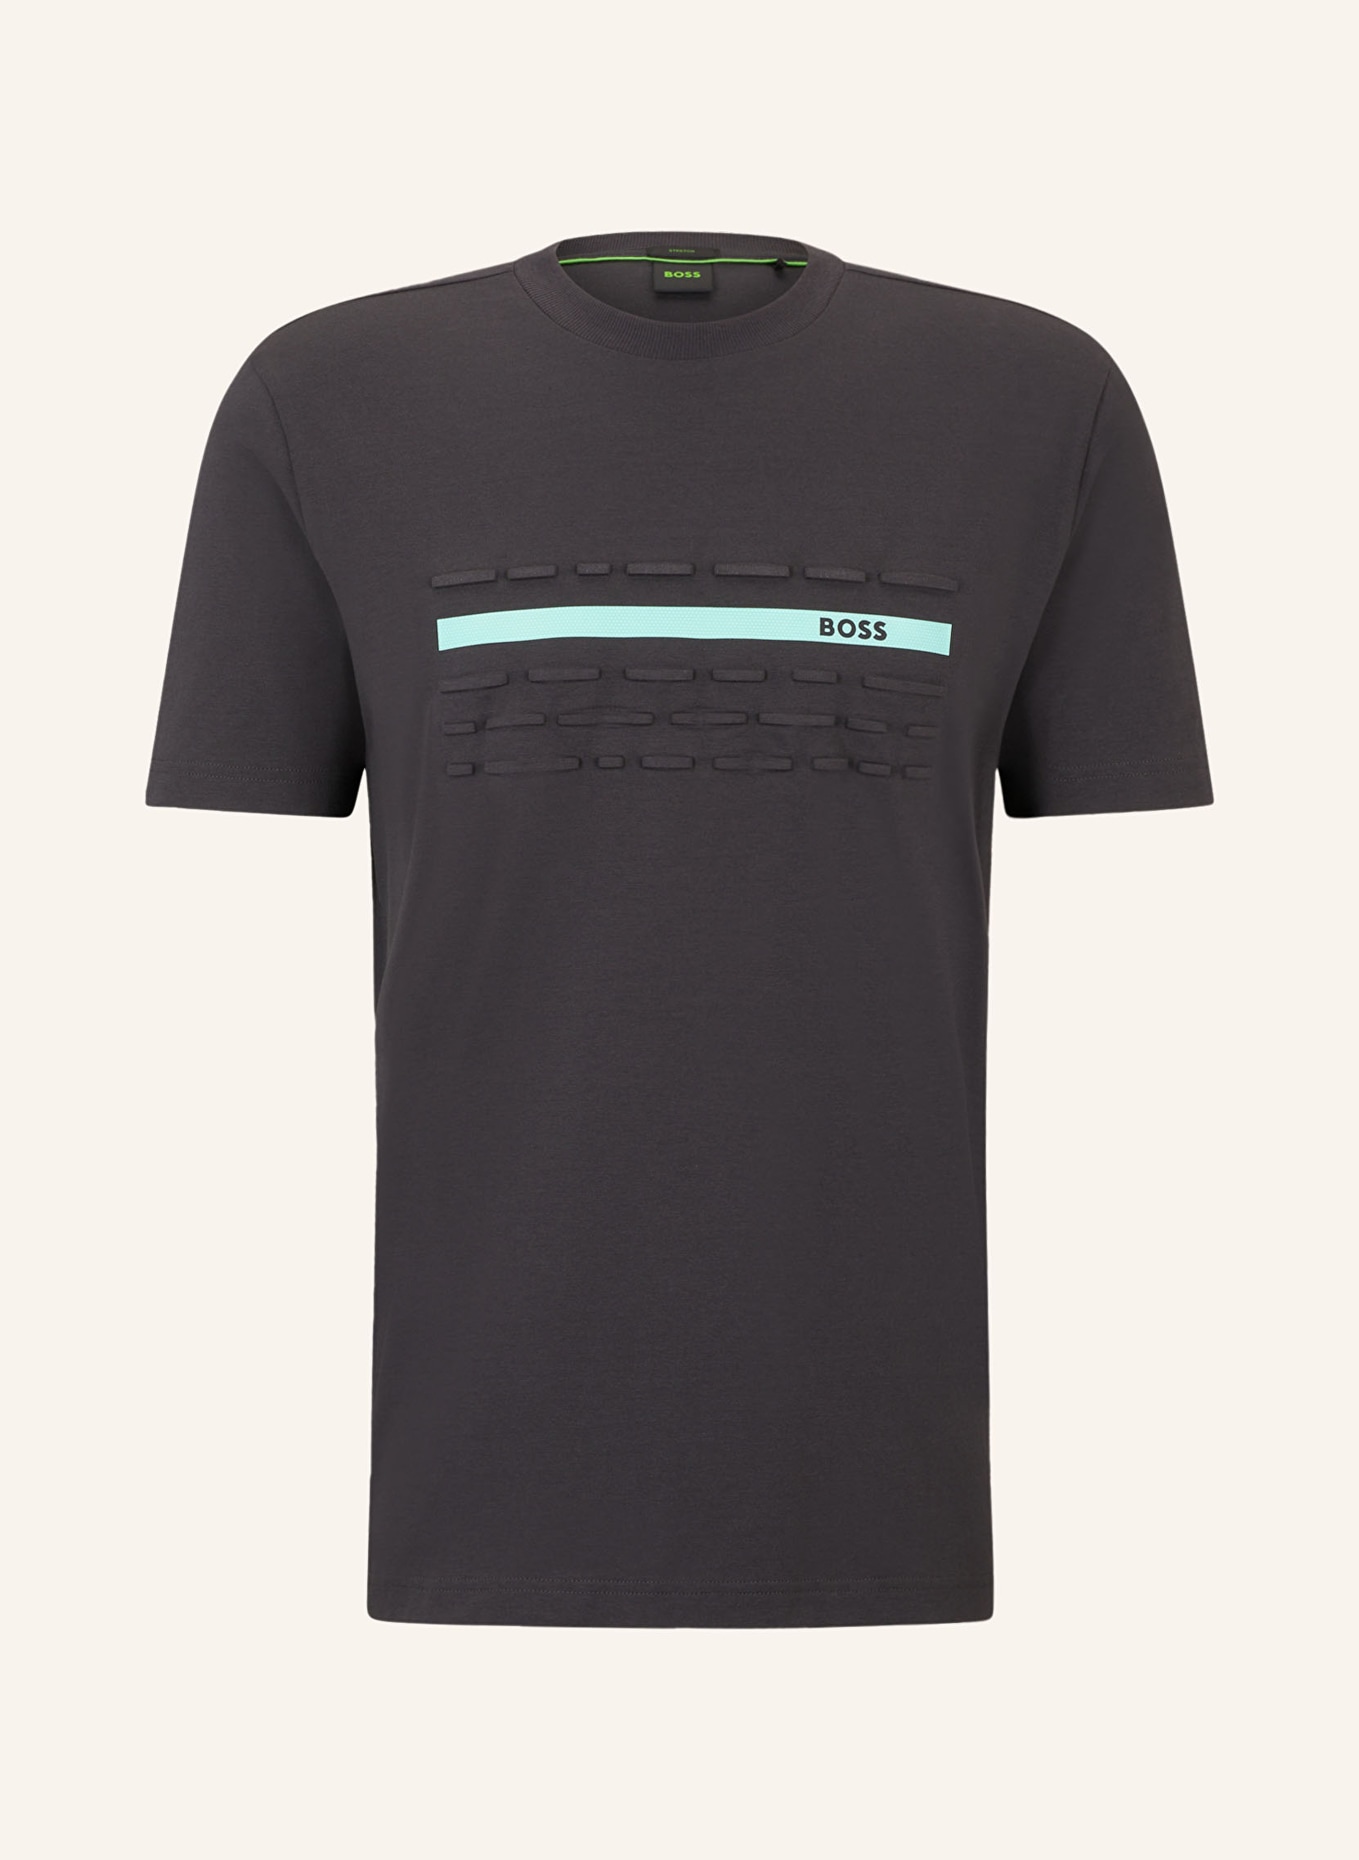 BOSS T-Shirt, Farbe: DUNKELGRAU/ MINT/ SCHWARZ (Bild 1)